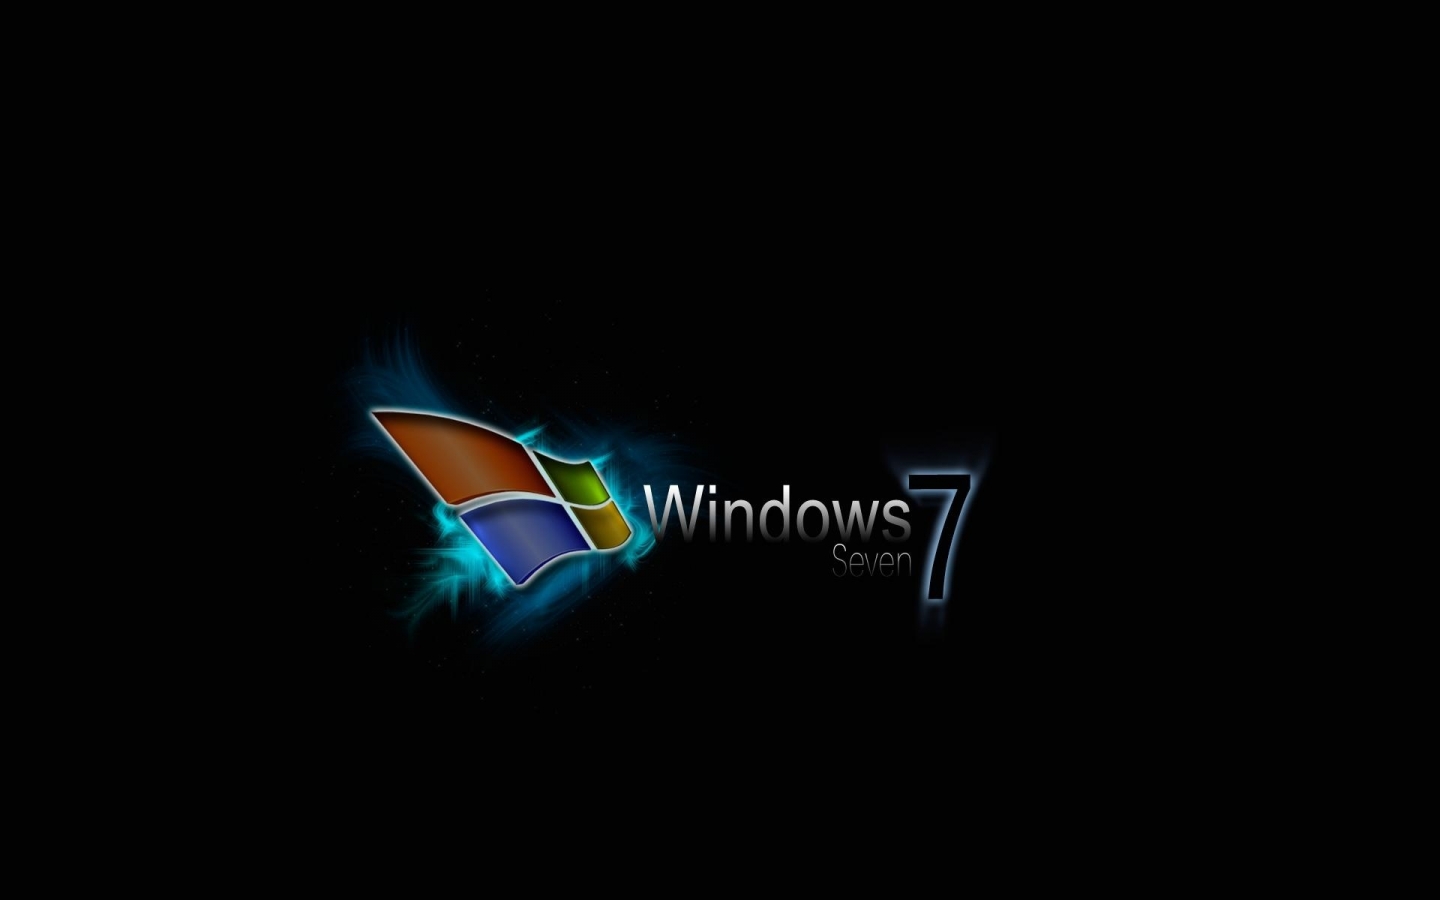 Best Windows 7 for 1440 x 900 widescreen resolution